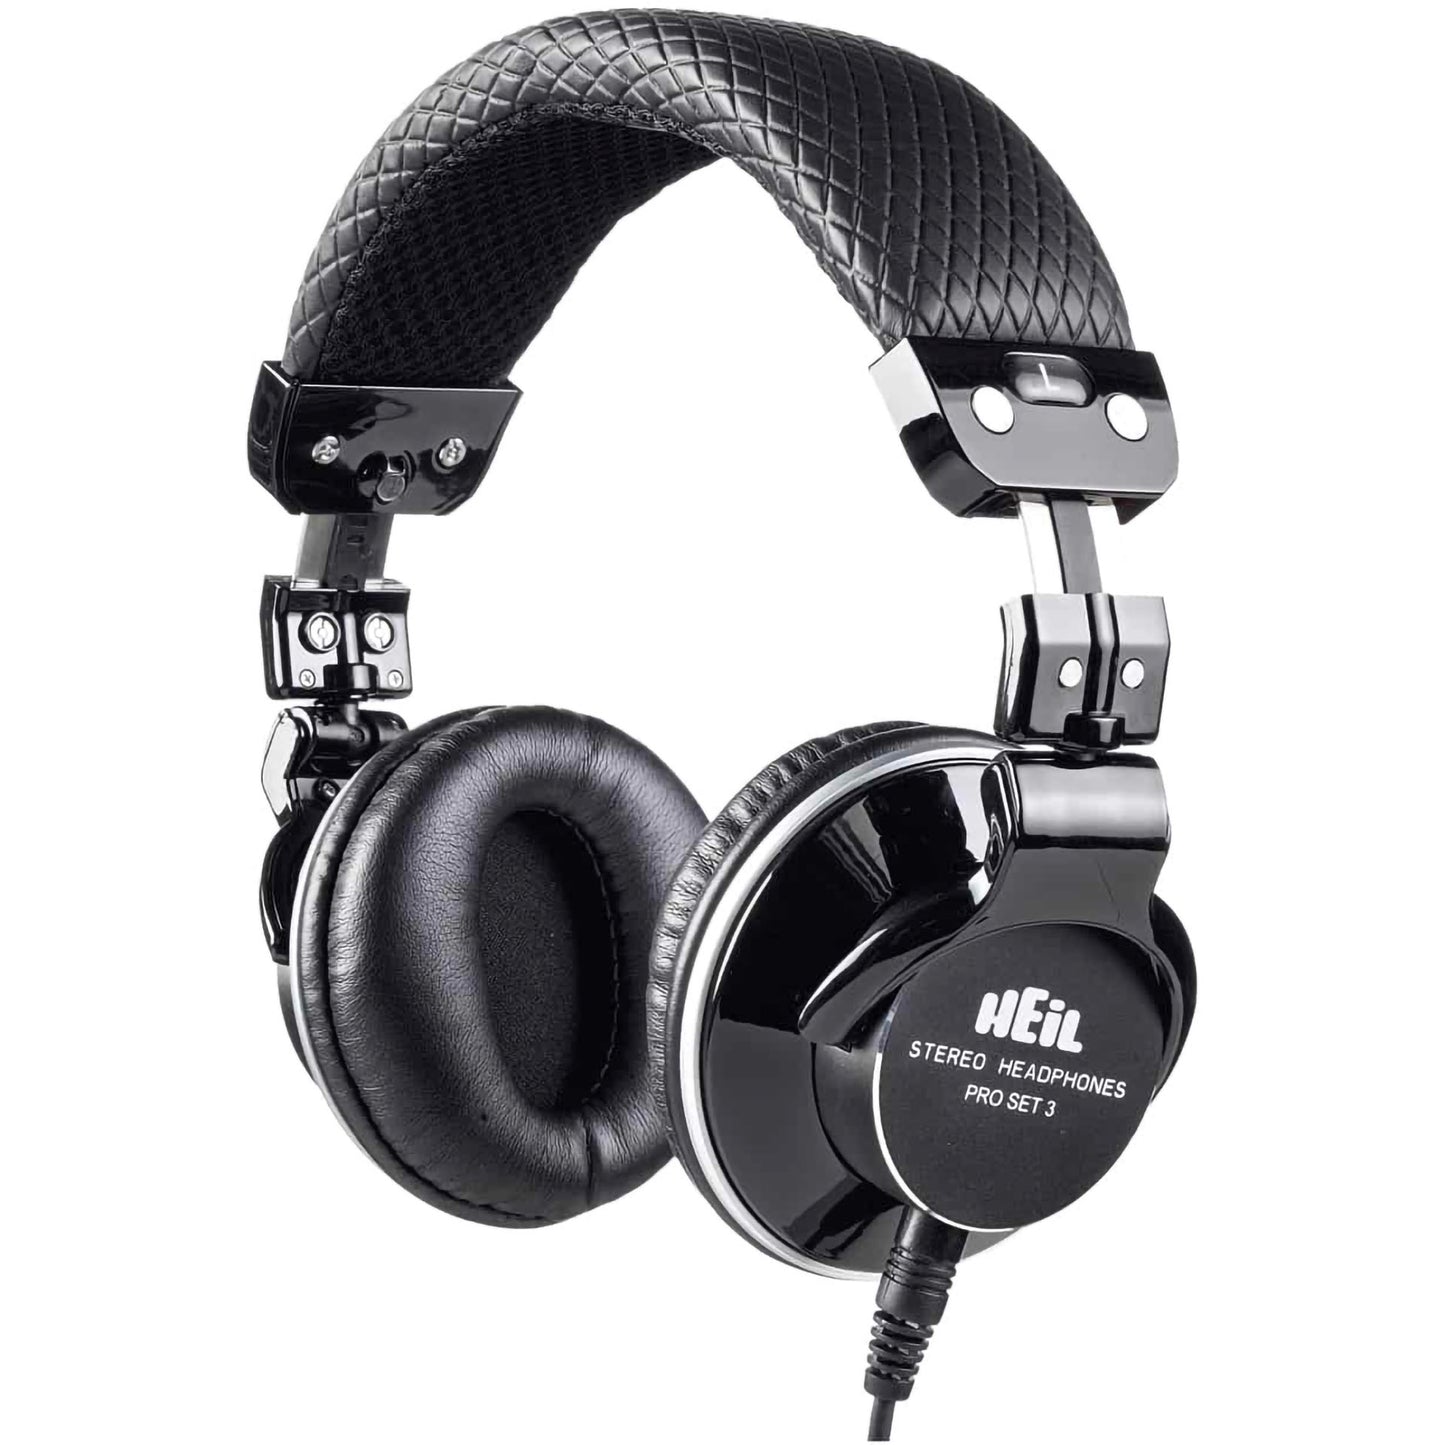 Heil ProSet 3 Studio Headphones